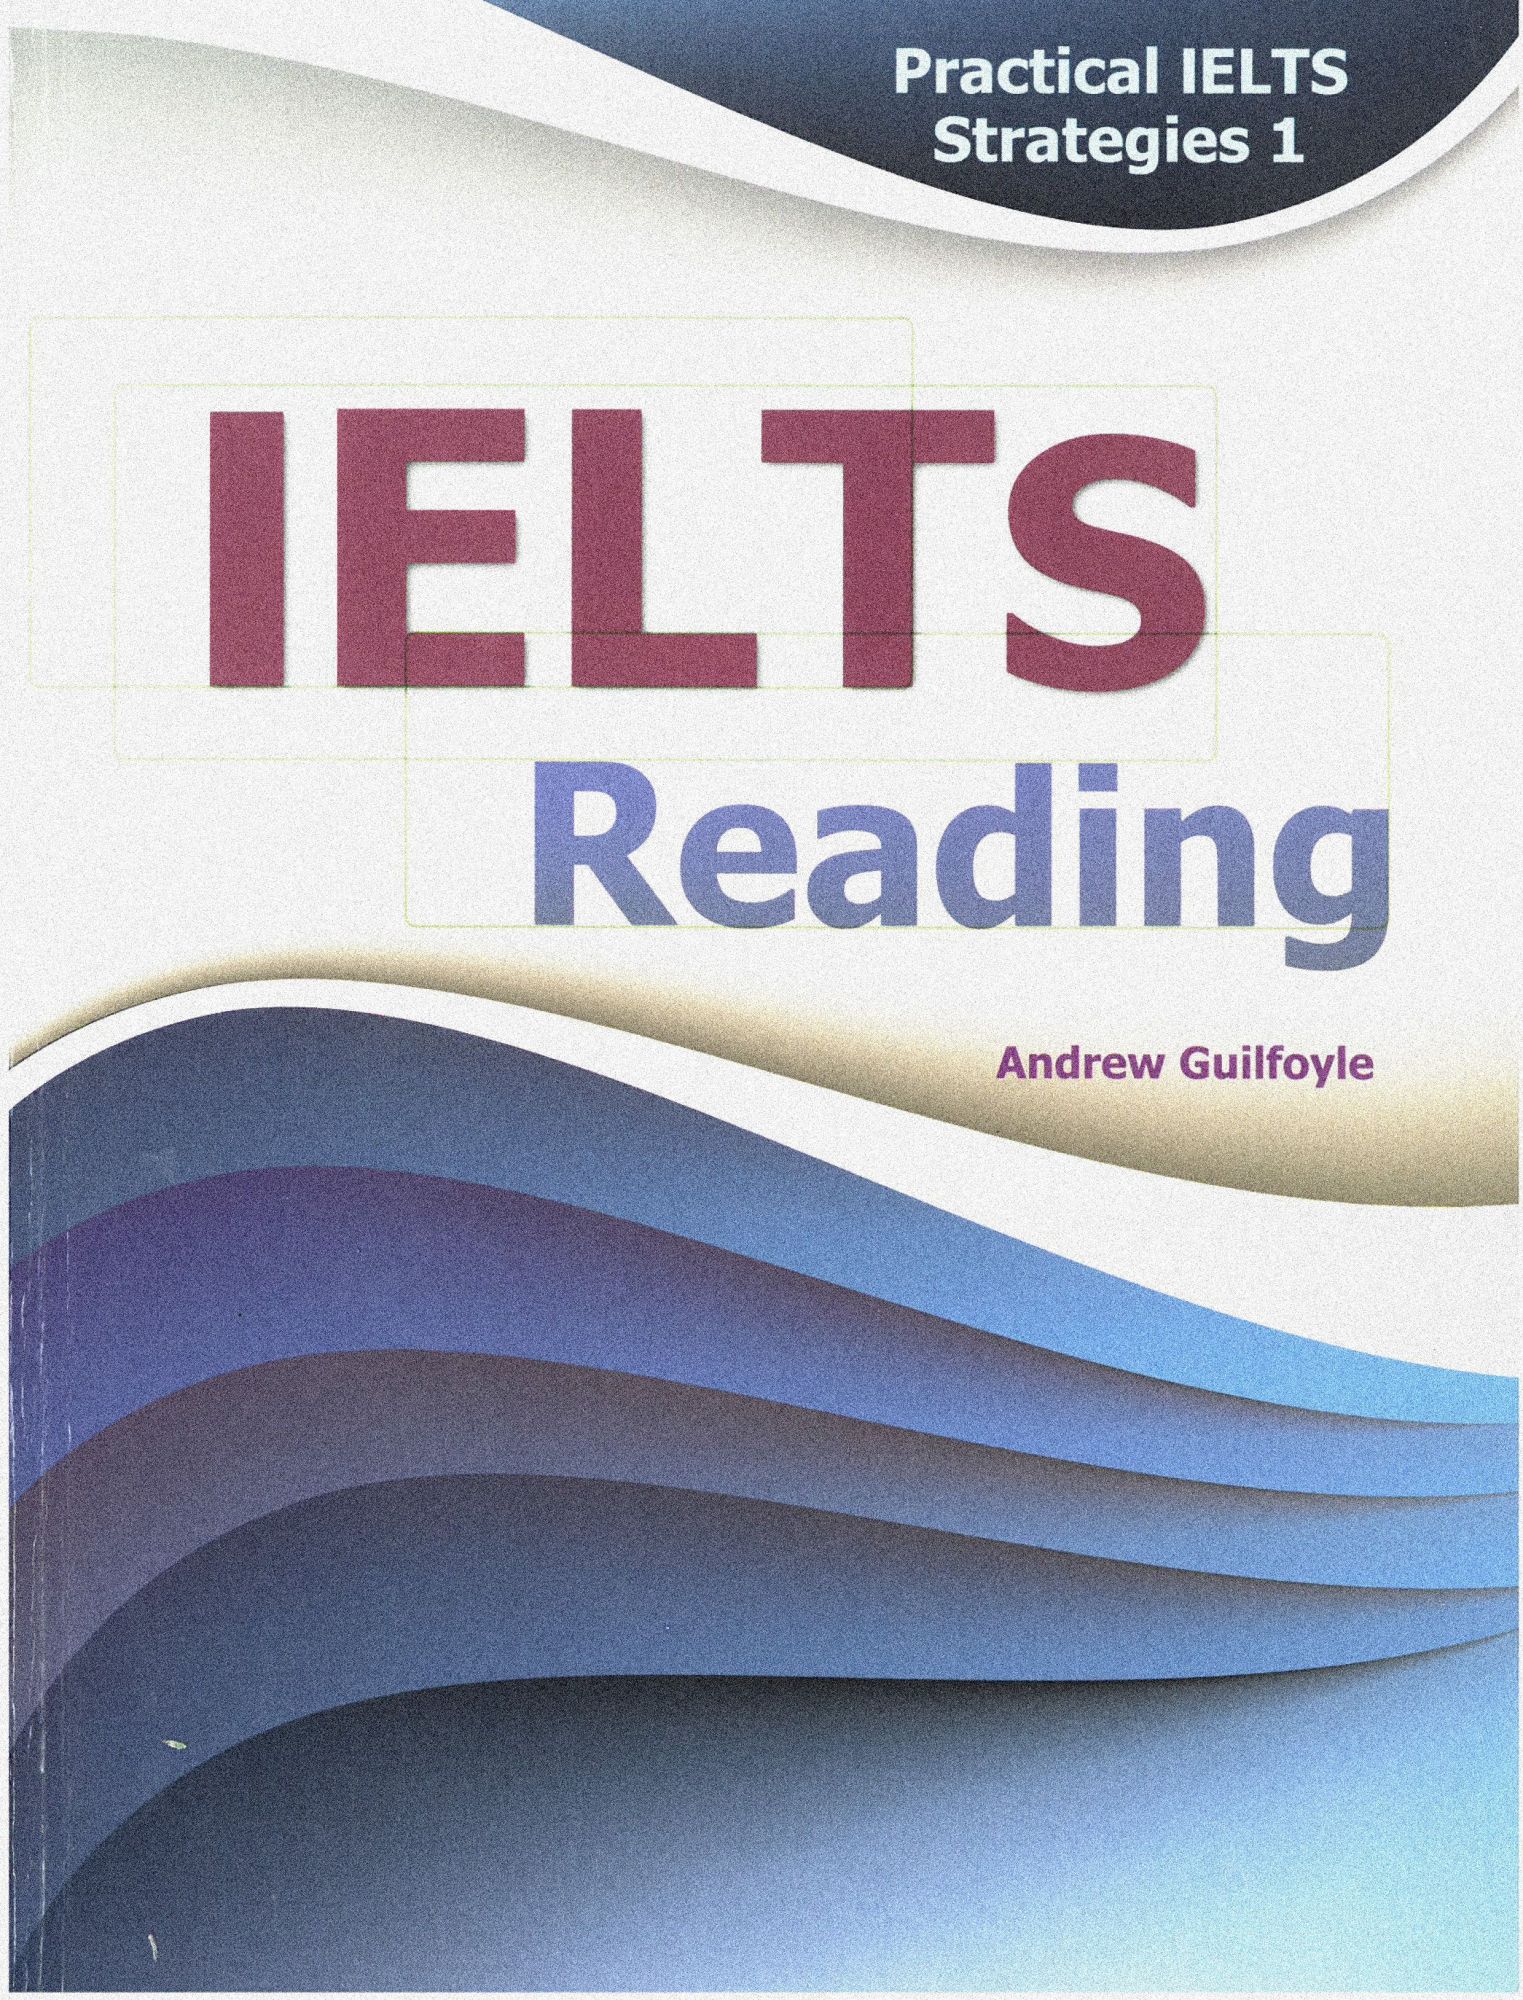 Practical IELTS Strategies 1 - IELTS Reading